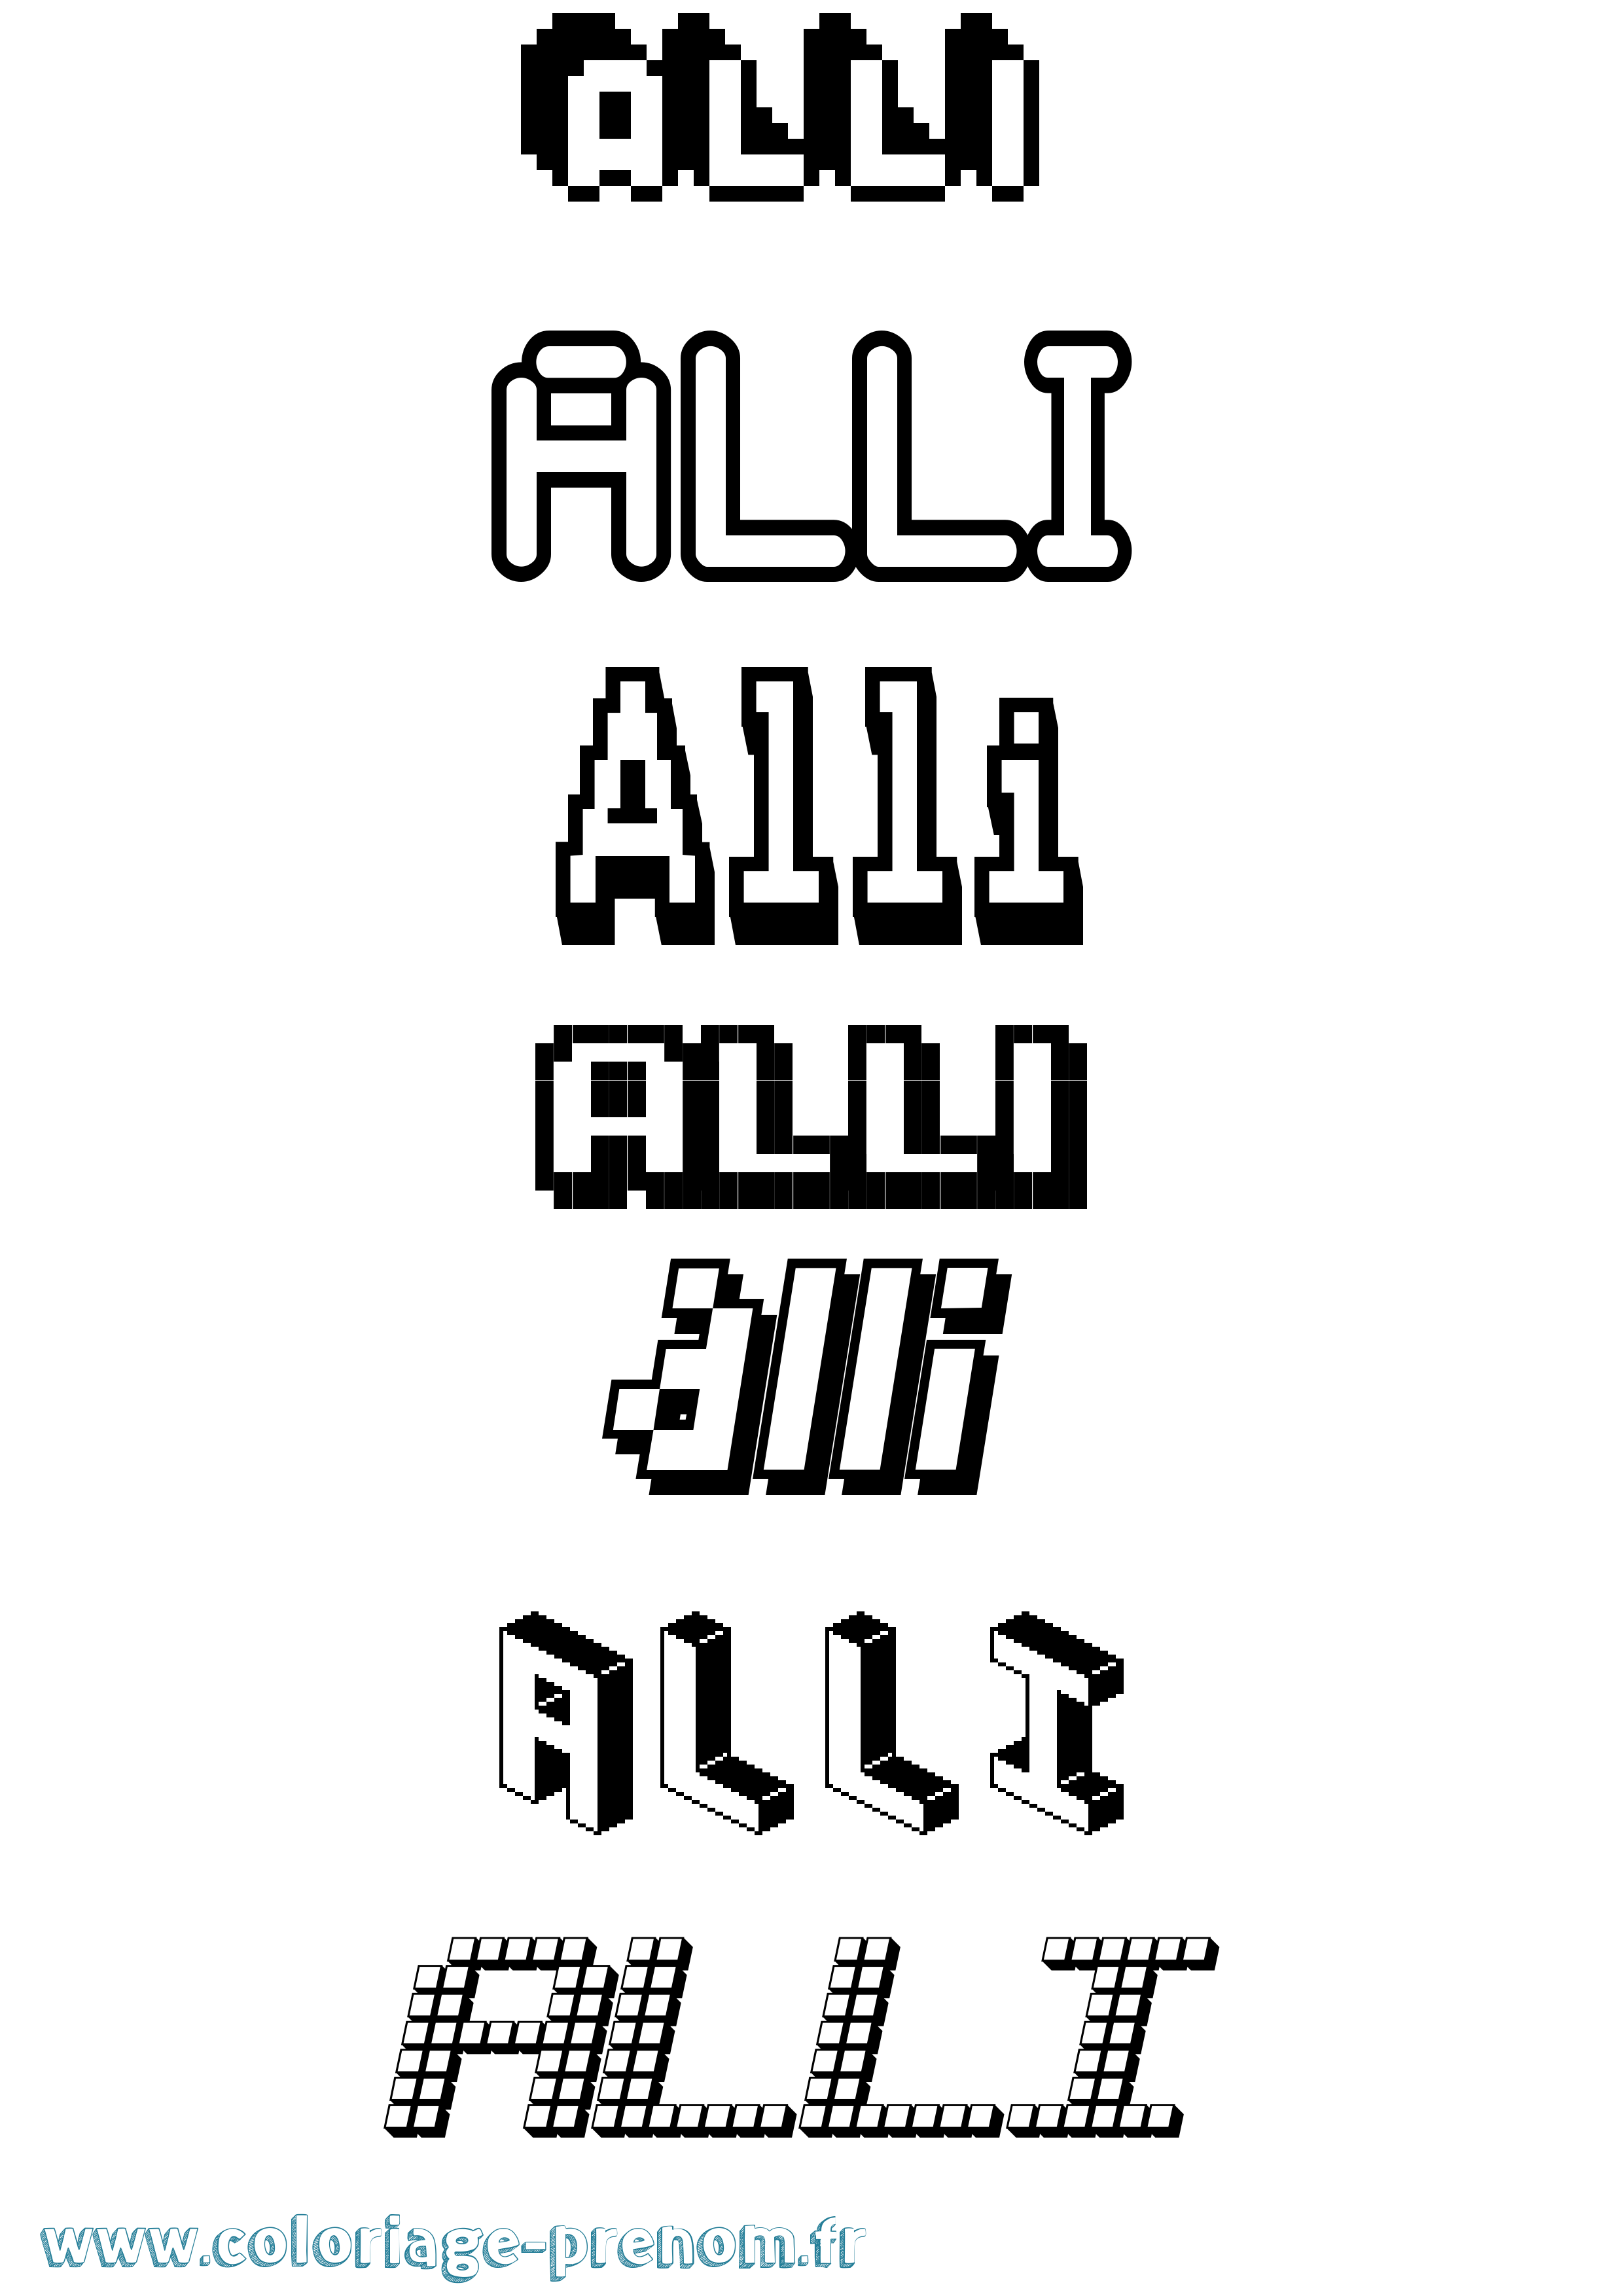 Coloriage prénom Alli Pixel